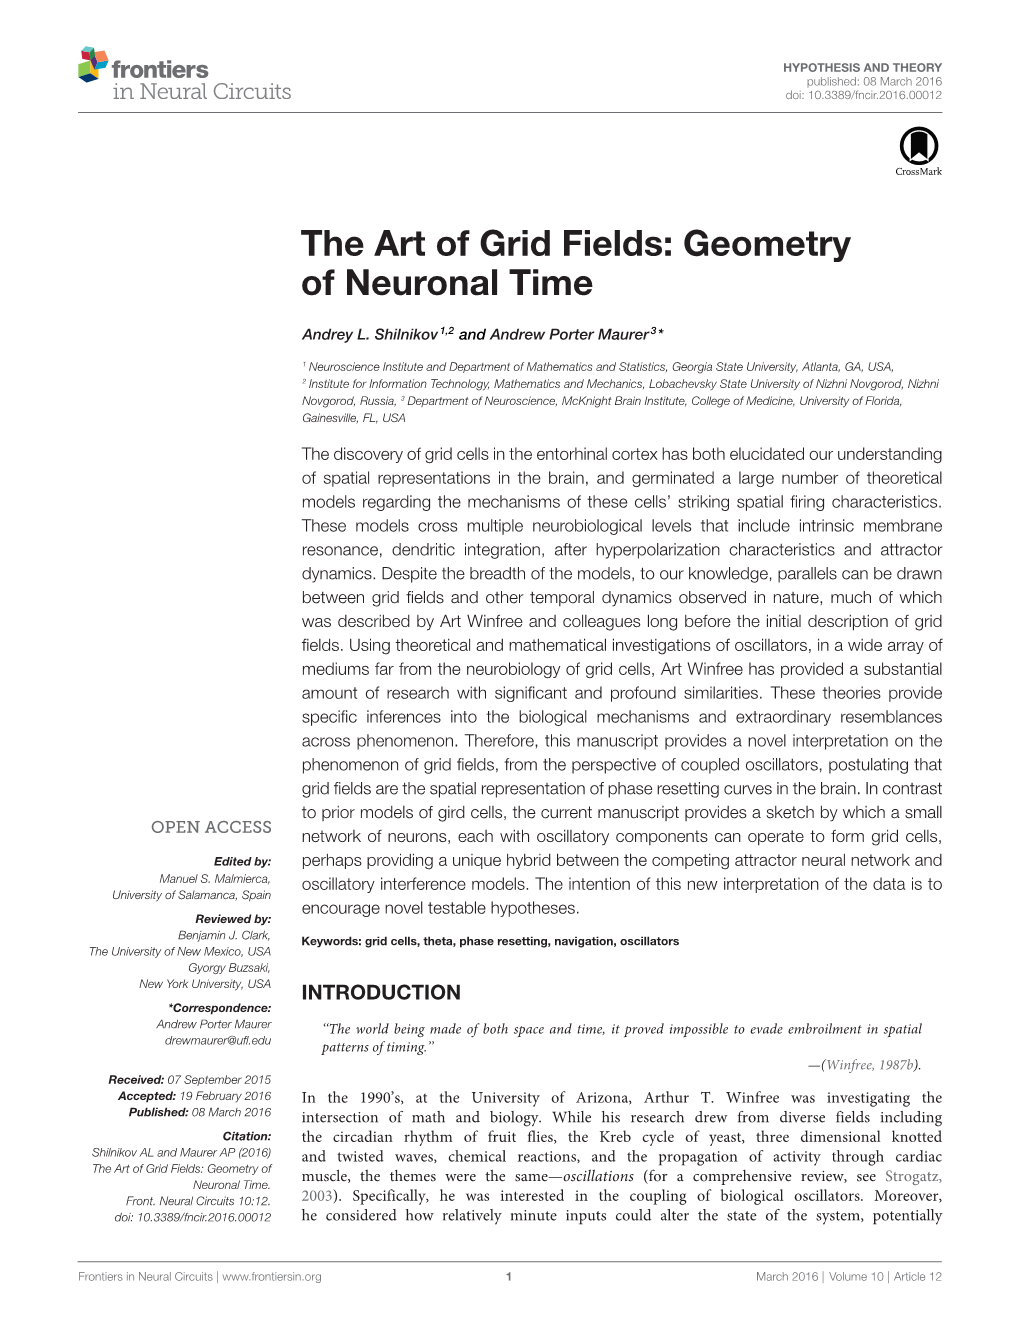 The Art of Grid Fields: Geometry of Neuronal Time